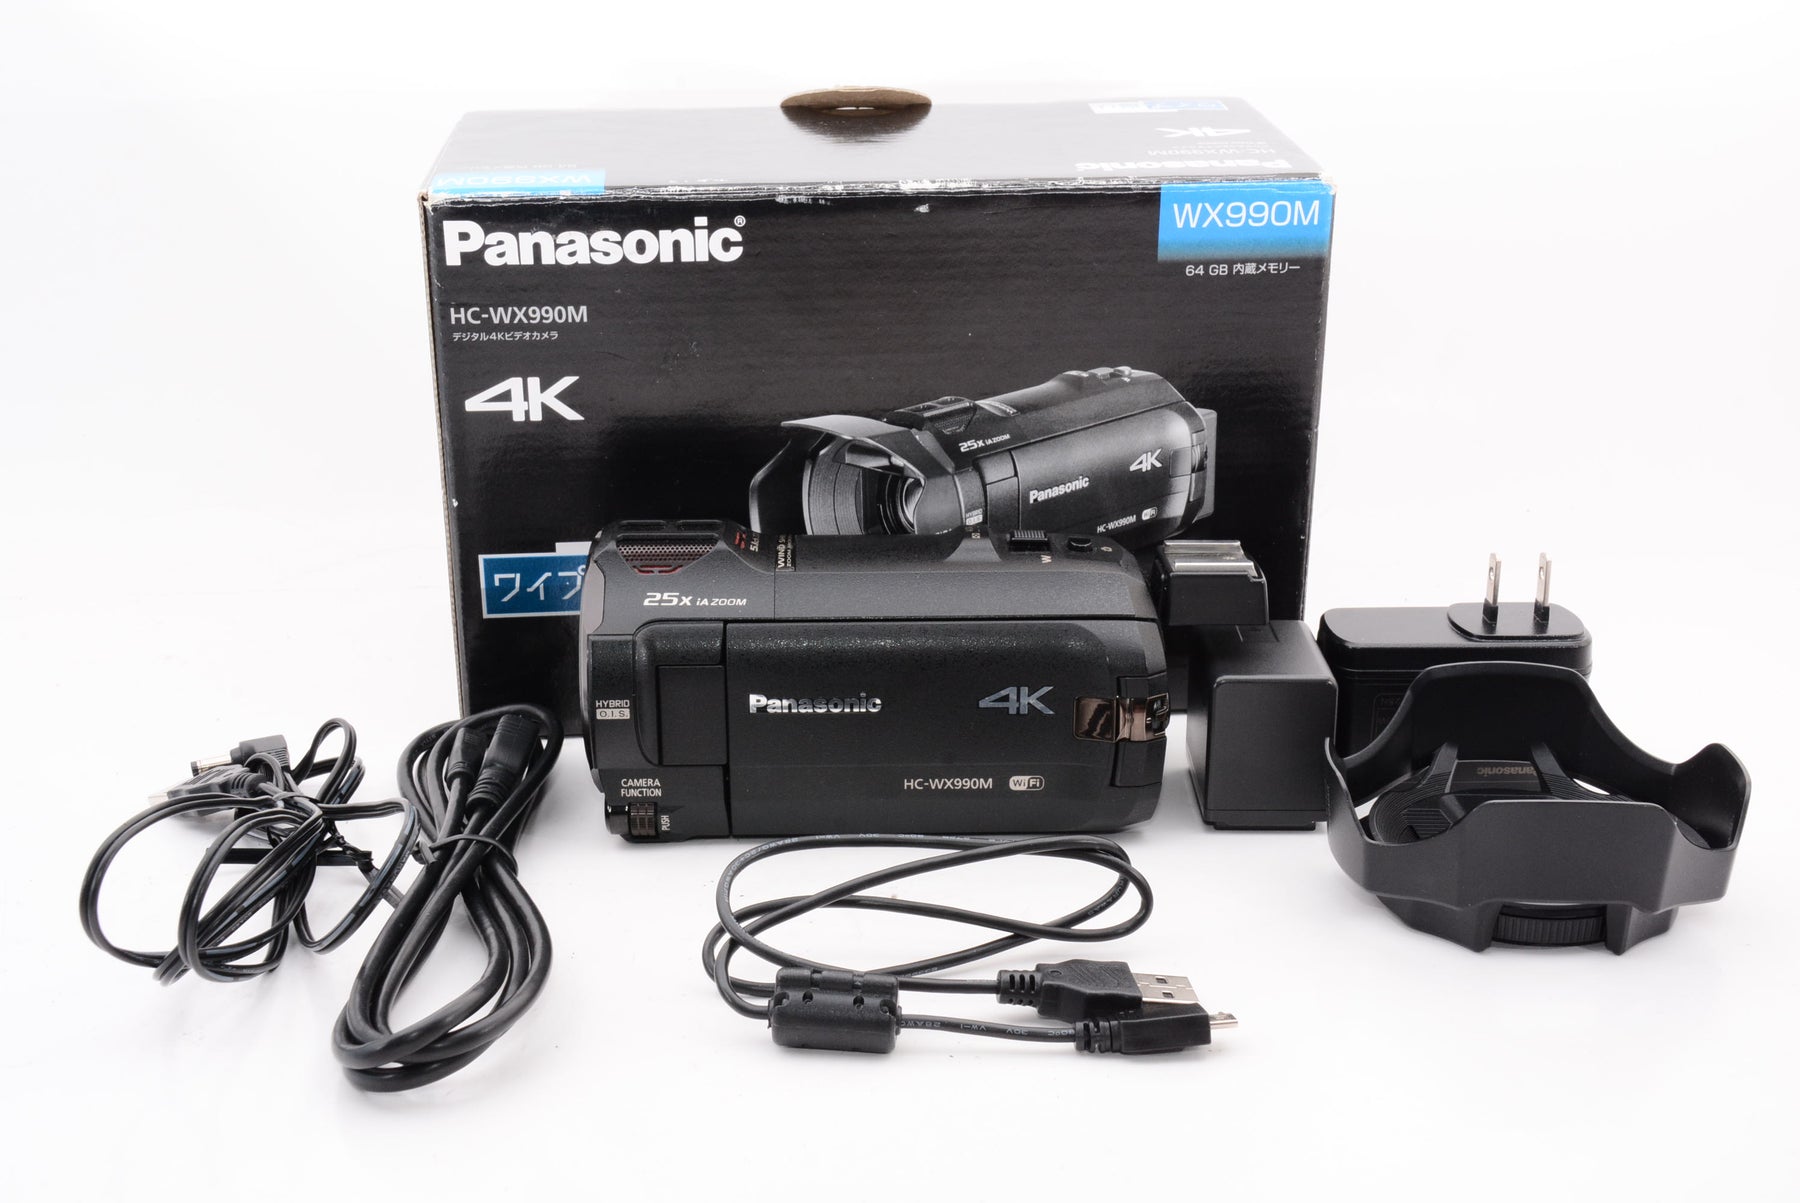 パナソニック デジタル4Kビデオカメラ WXF990M 64GB ワイプ撮り あとから補正 ブラック HC-WXF990M-K - 3